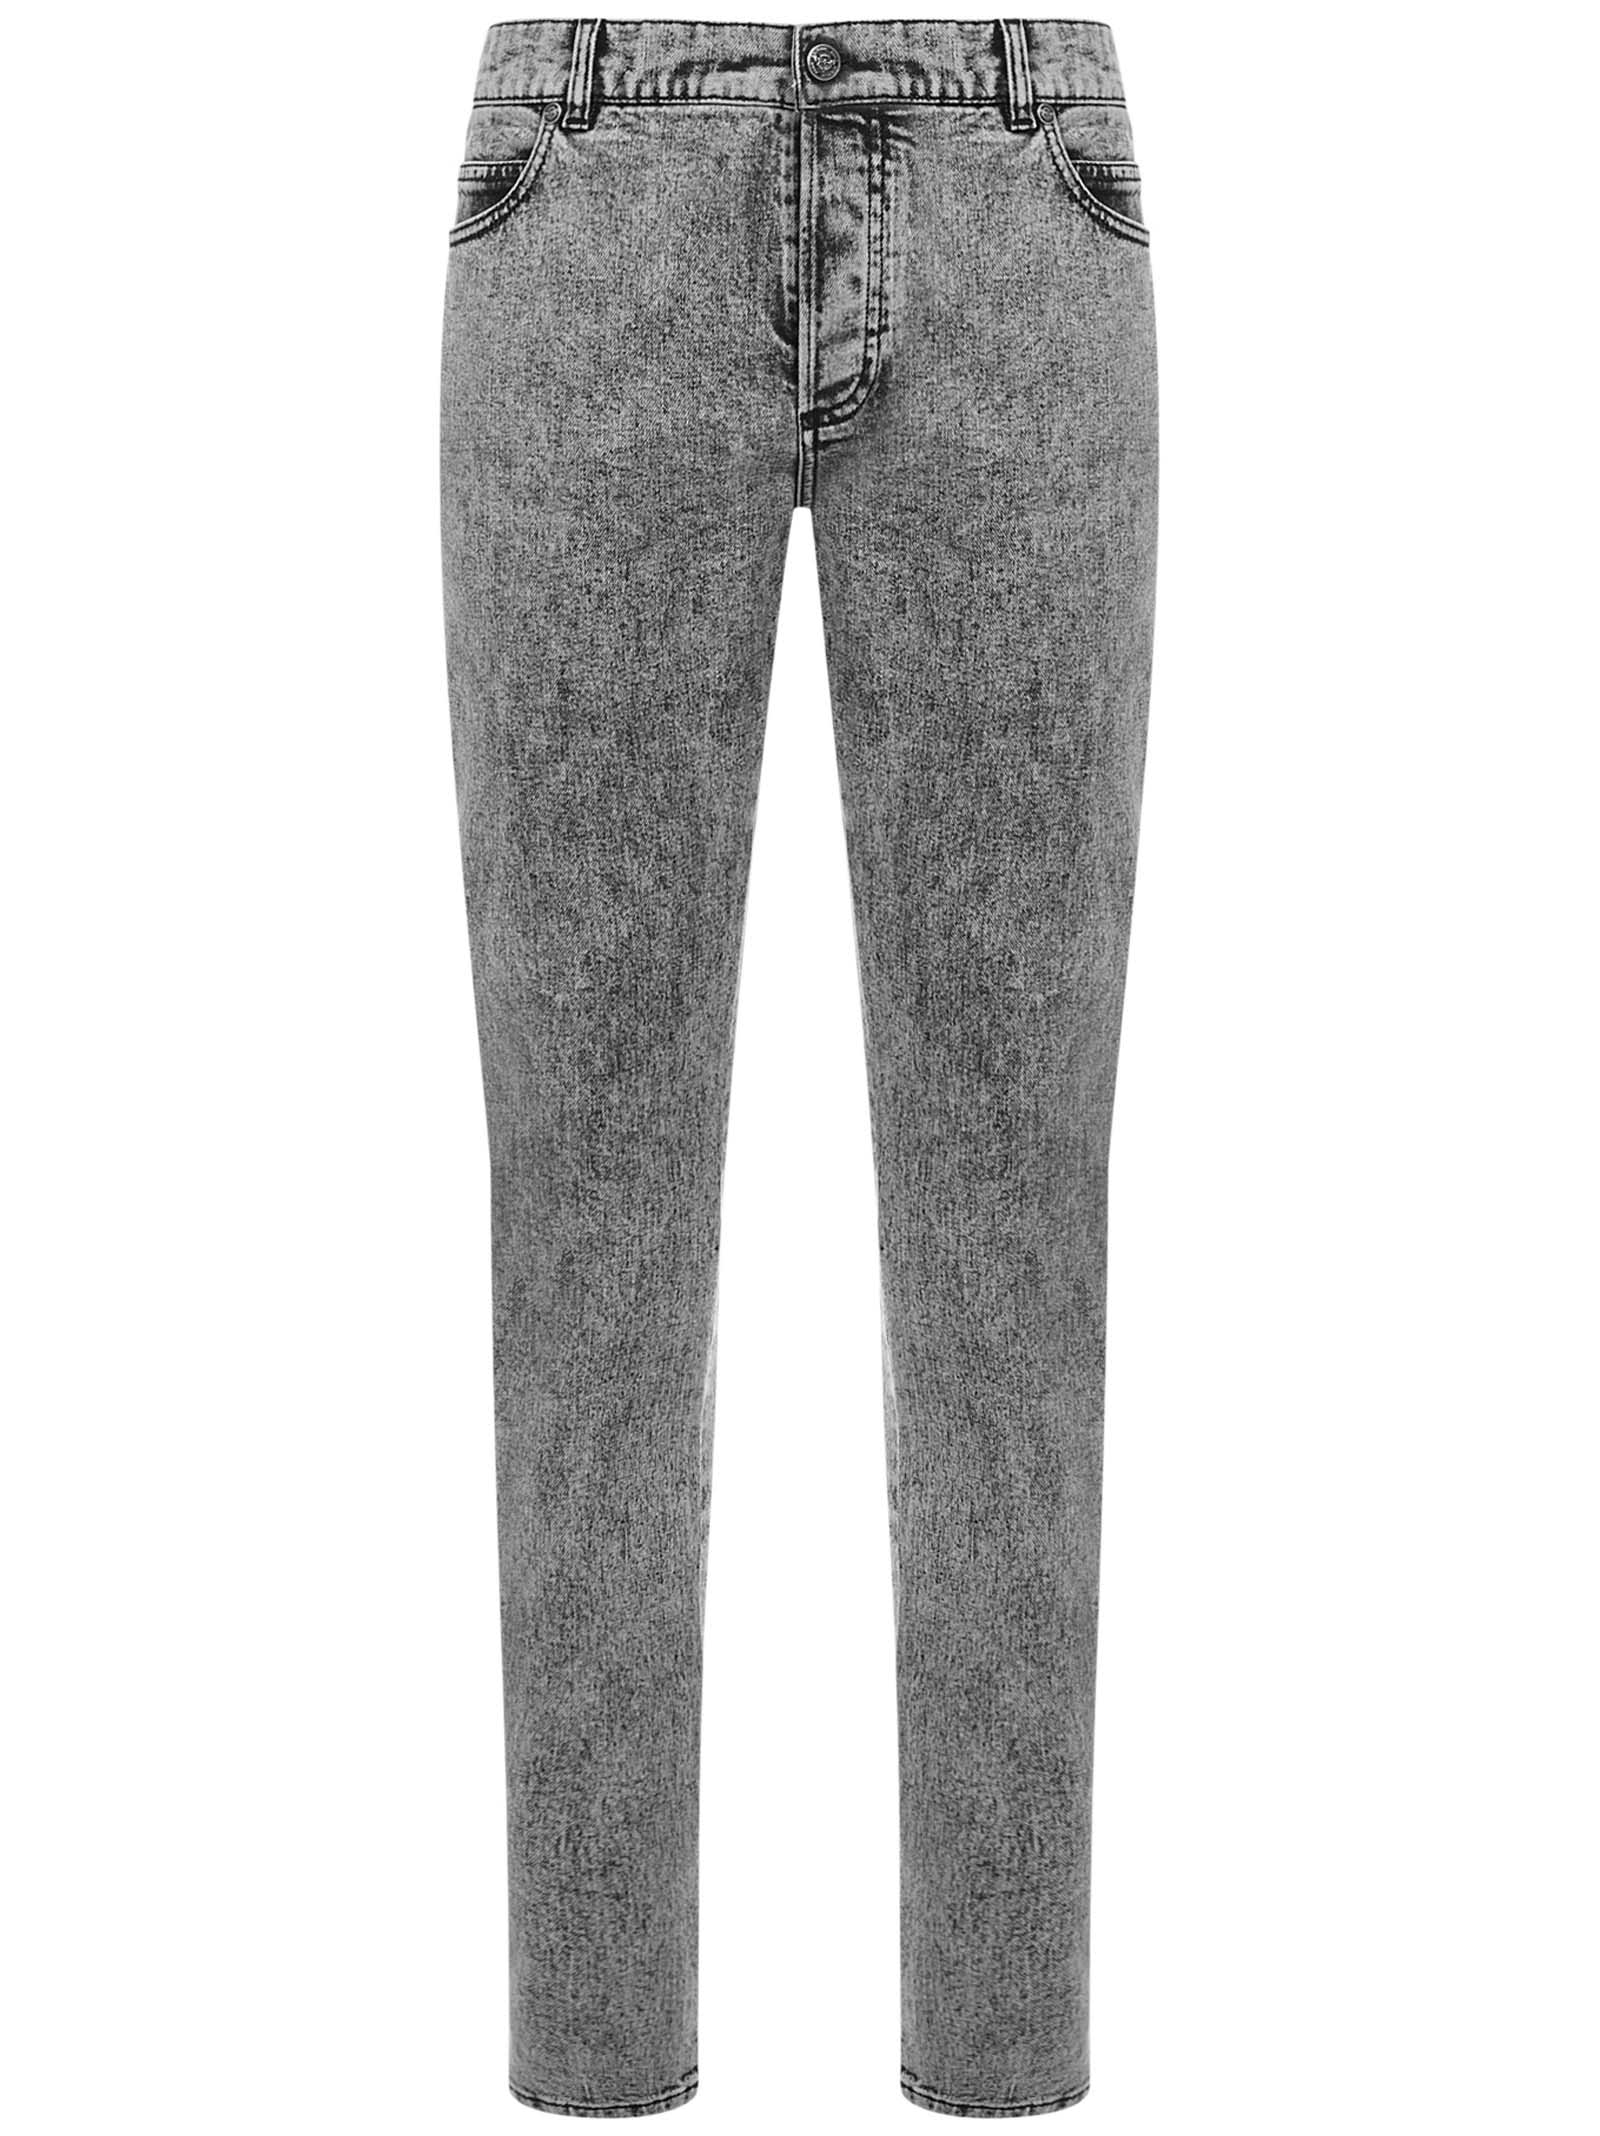 Balmain Paris Jeans In Grey